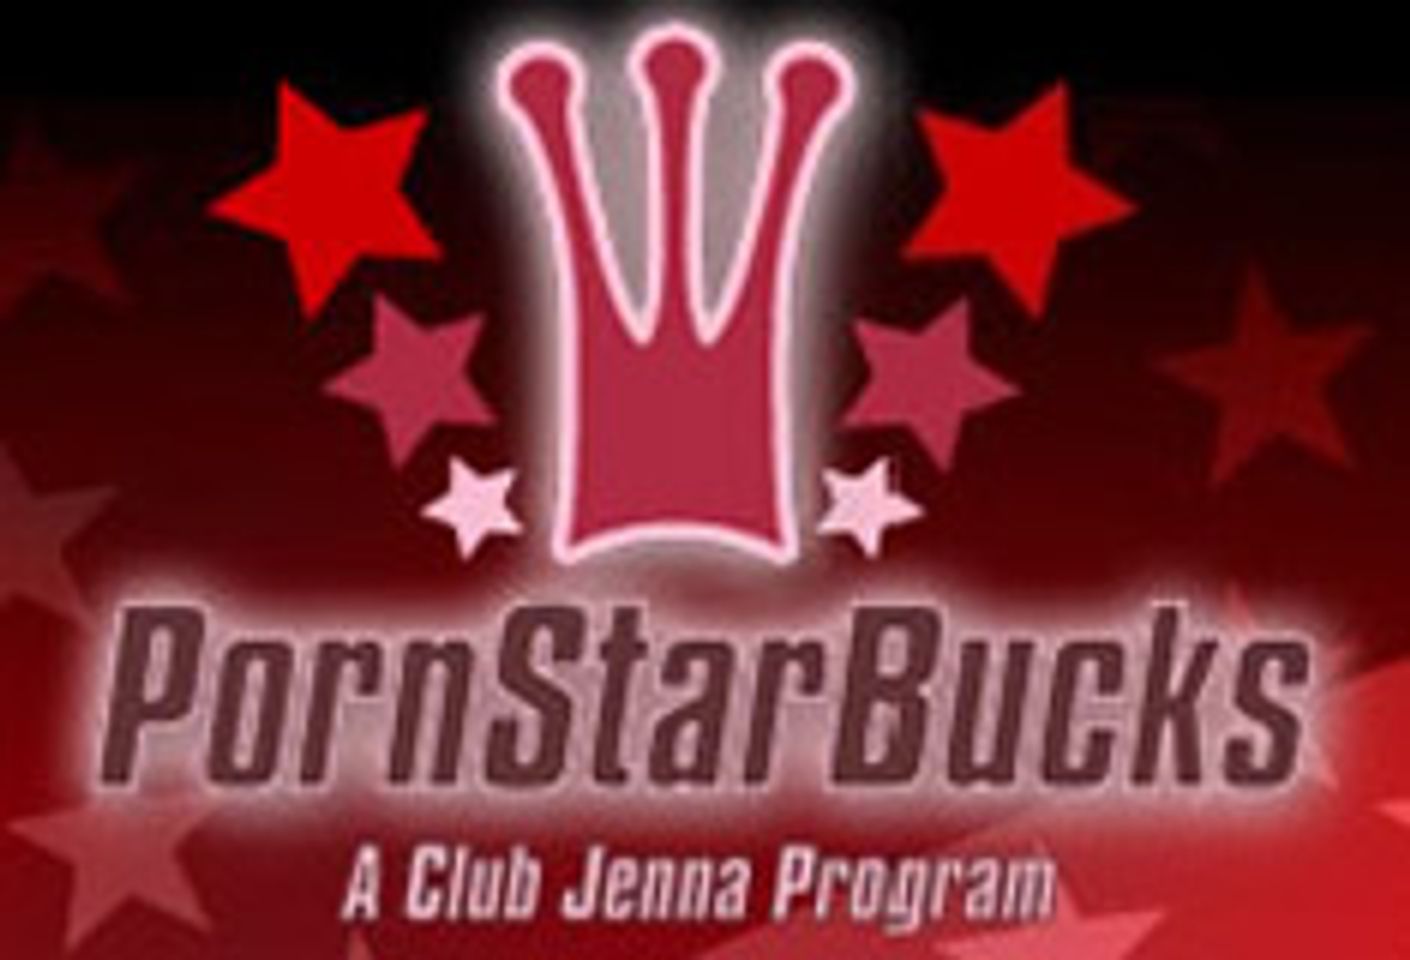 PornStarBucks Adds ClubJenna Live